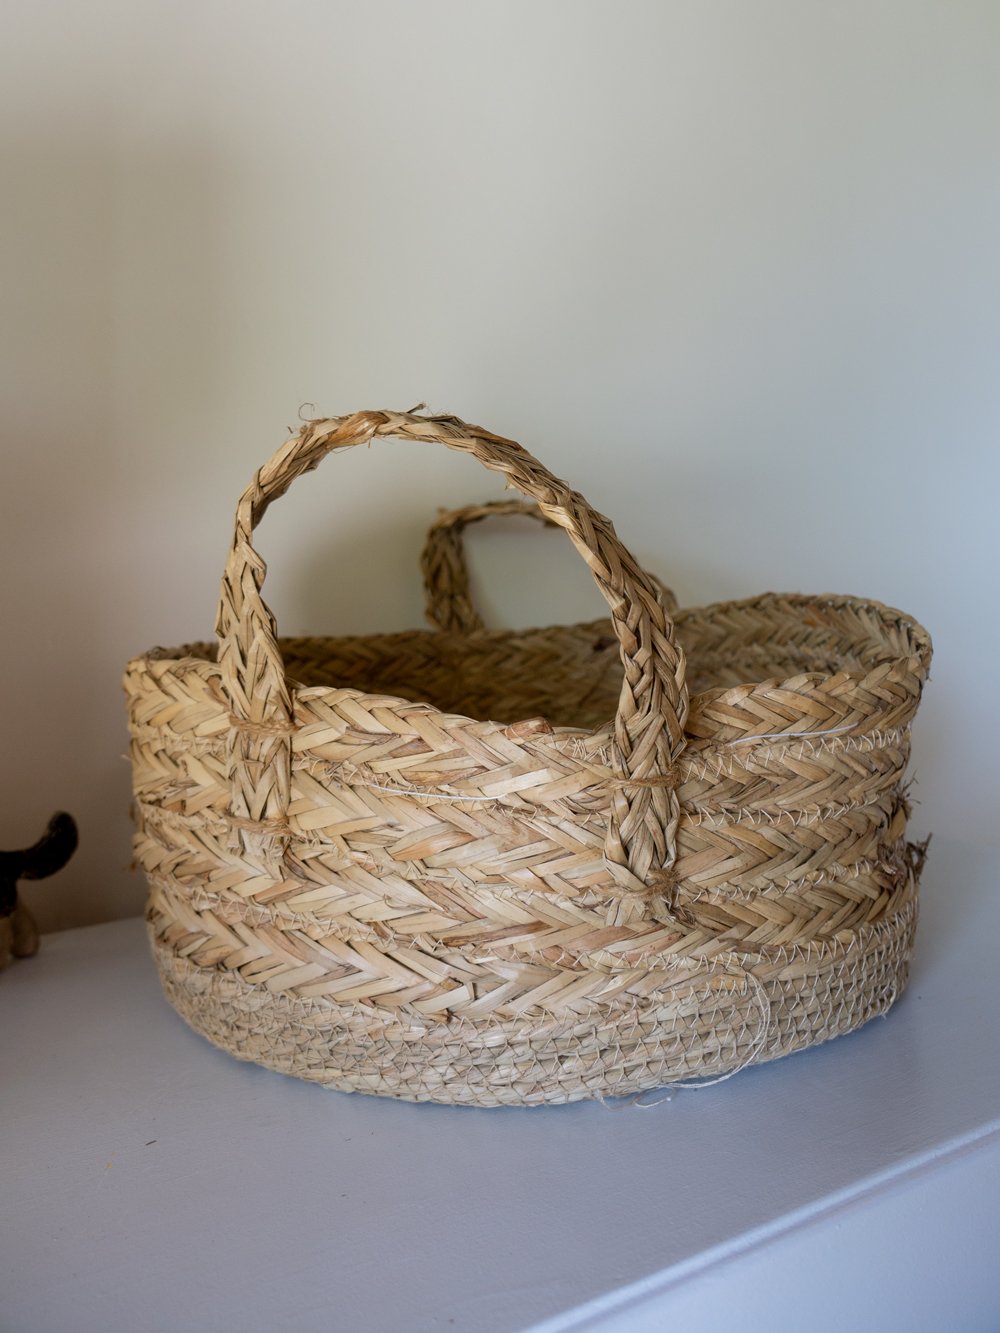 Image of wicker basket